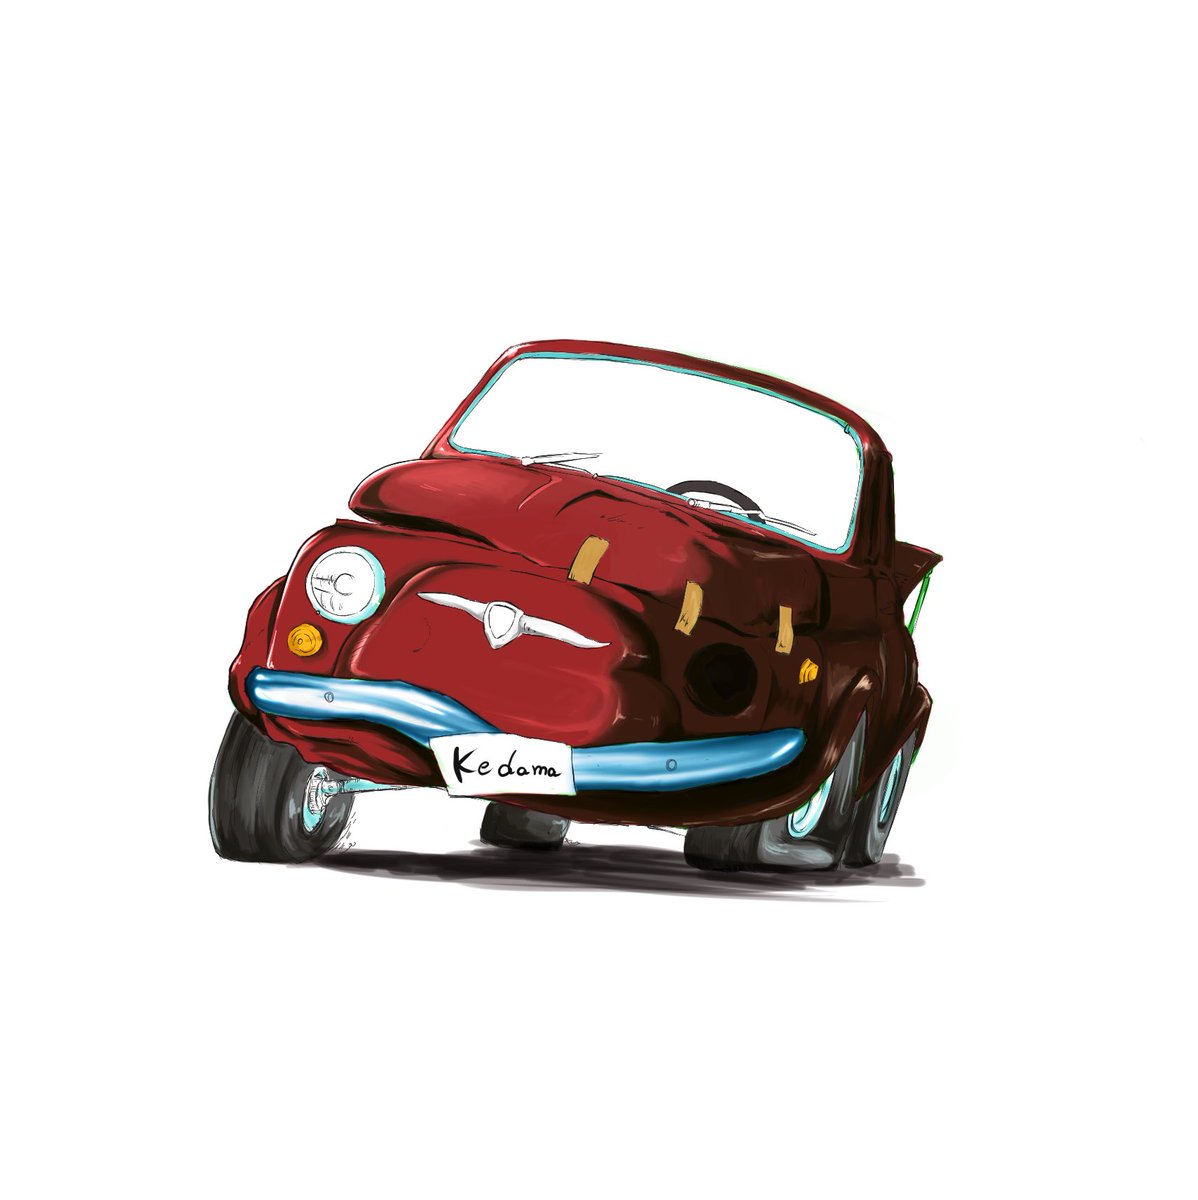 ট ইট র けだま 絵描き ひさびさの絵描き ルパンの車を模写 ルパン三世 イラスト けだま絵道楽